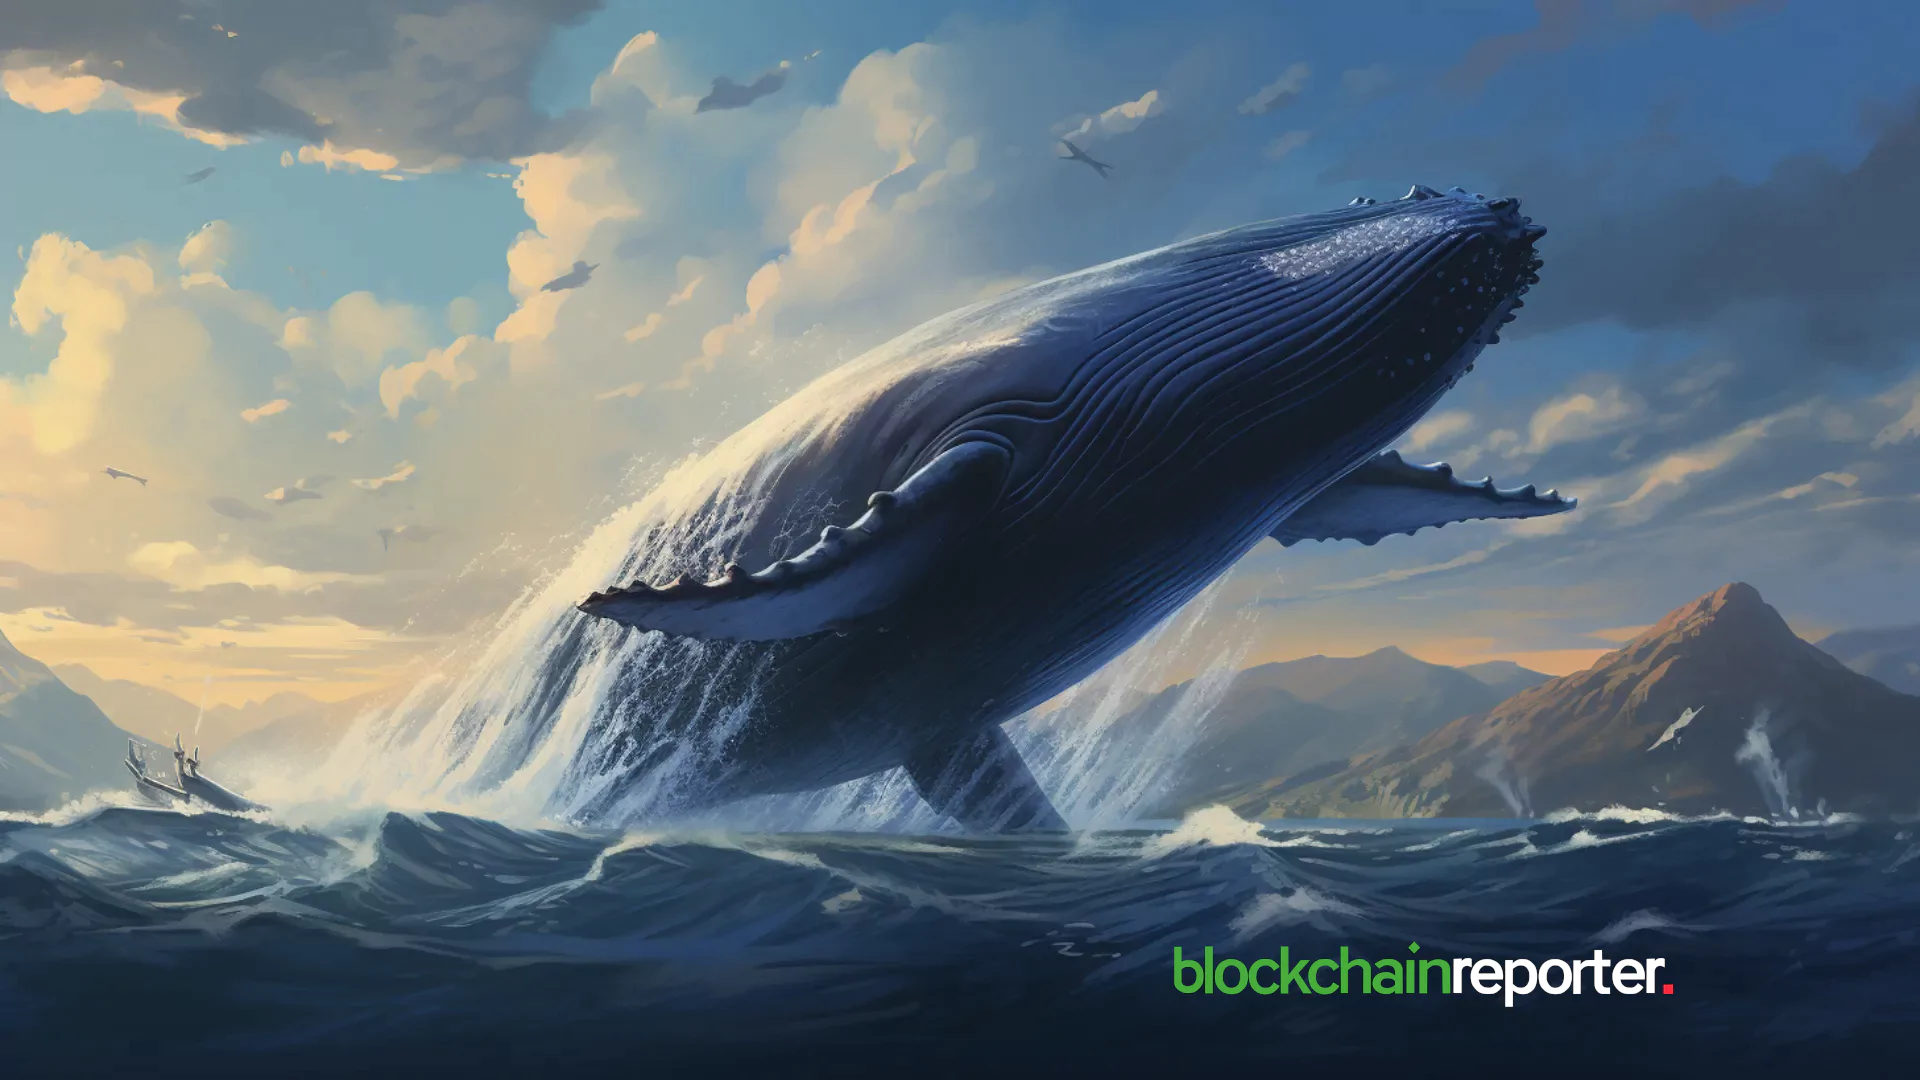 Der 8,89 Milliarden US-Dollar teure Token-Ursprung von $BEER Whale wirft Fragen auf